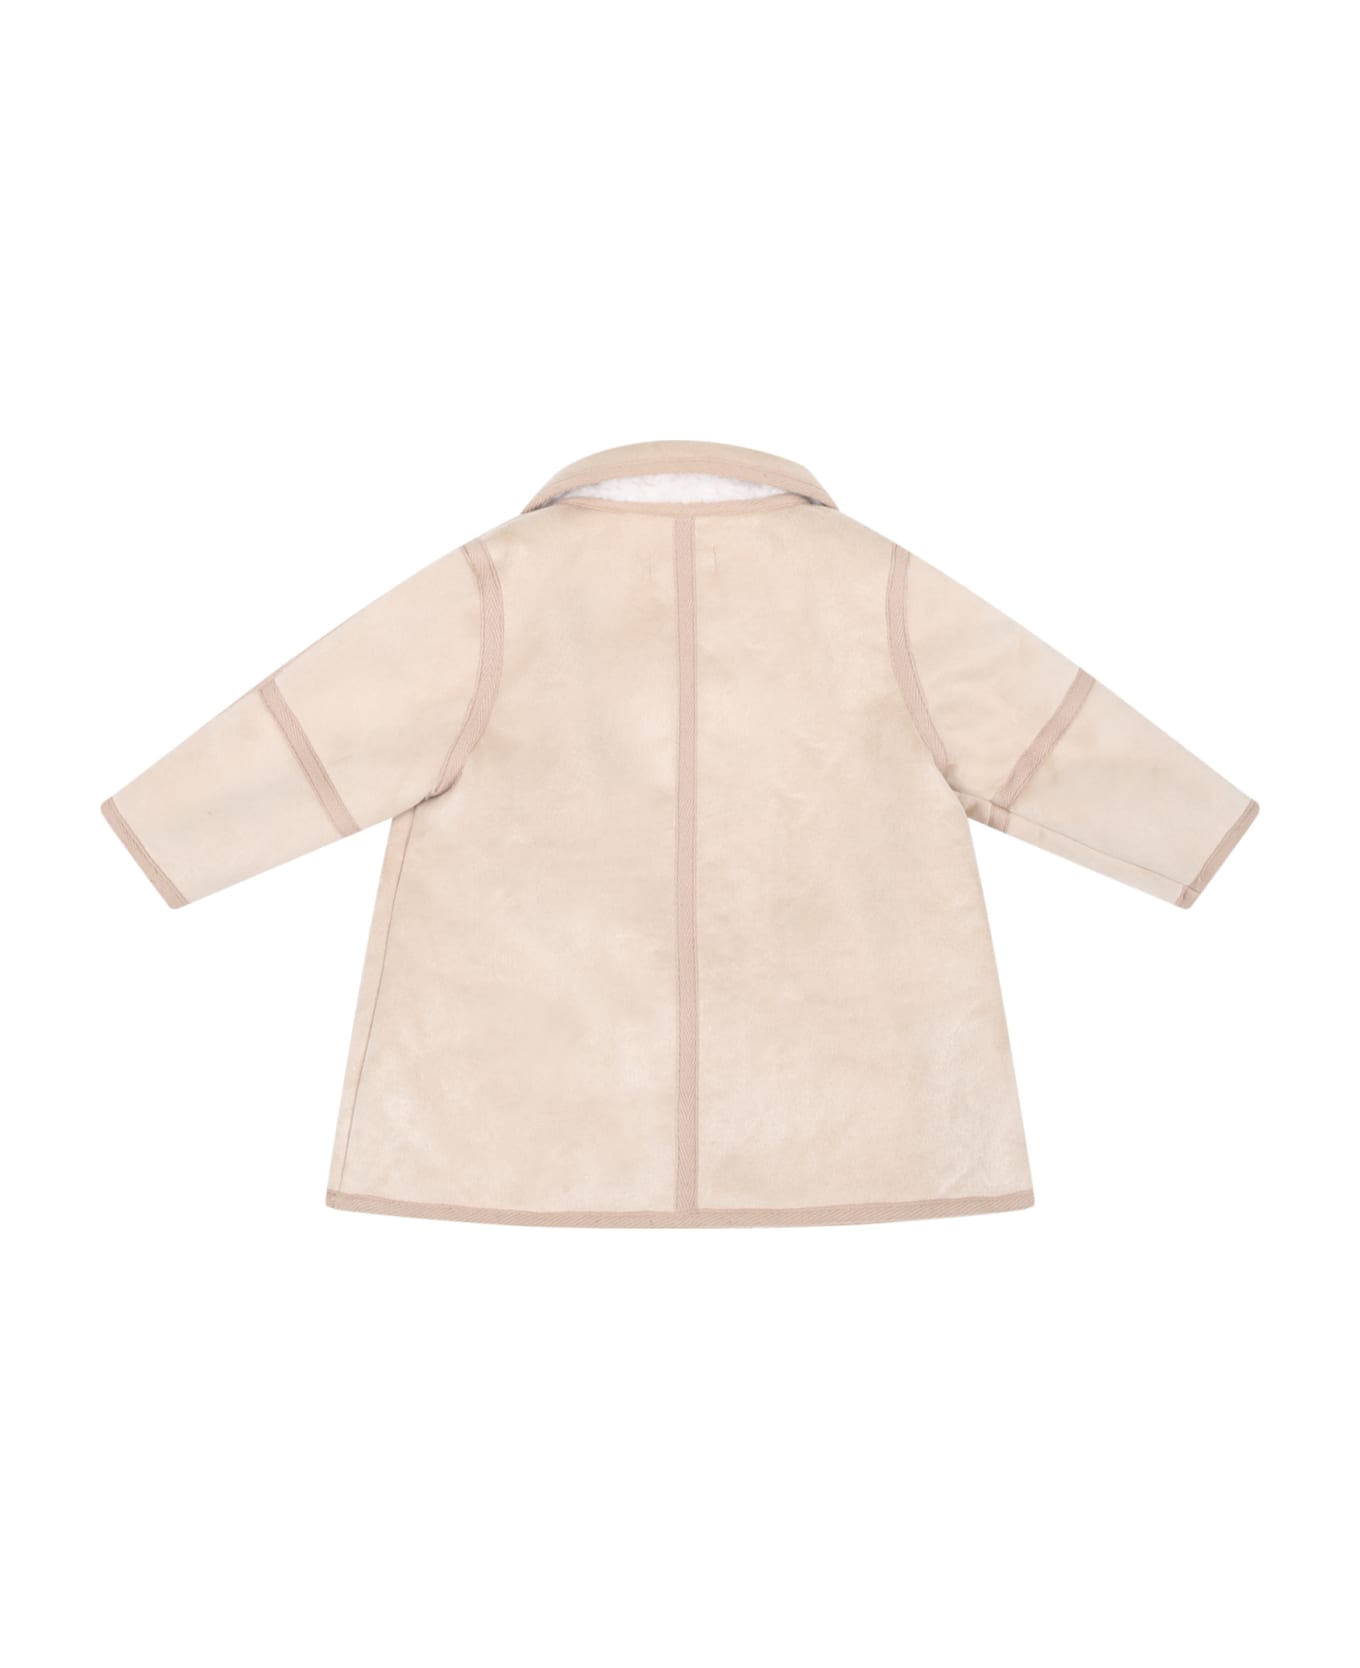 Chloé Beige Coat For Baby Girl - Beige